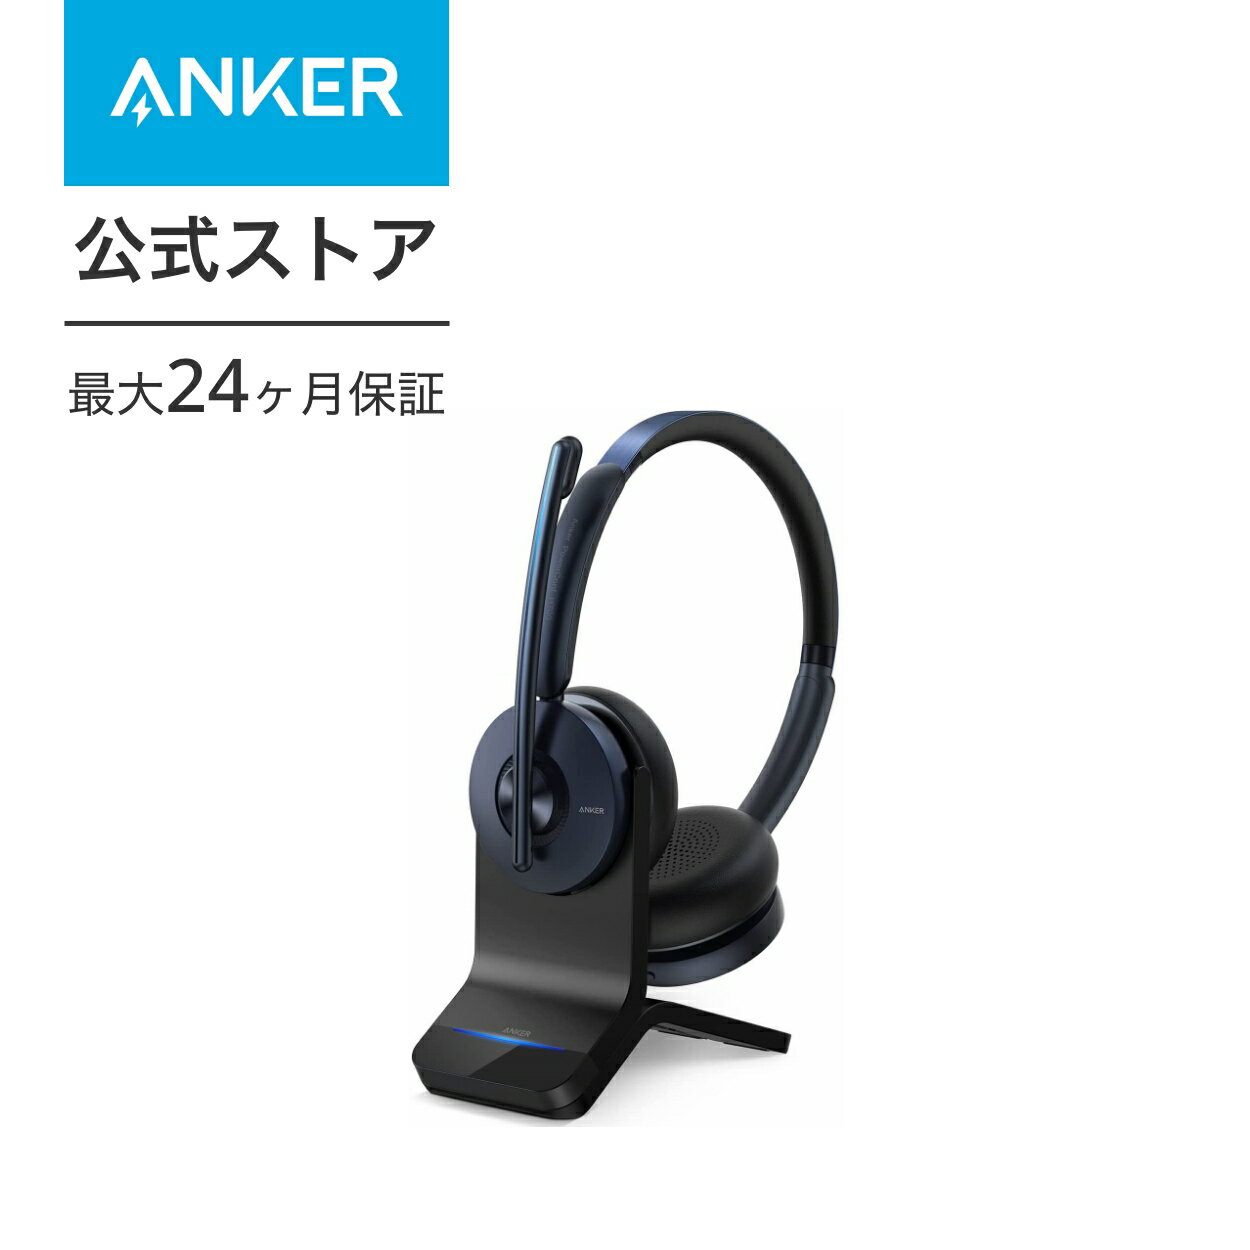 【4/1限定 最大10%OFFクーポン】Anker PowerConf H700（ワイヤレスヘッドセット Bluetooth 5.0）充電スタンド付属【パソコン用 / Web会議 / 通話ノイズリダクション / マイク搭載 / アクティブノイズキャンセリング】